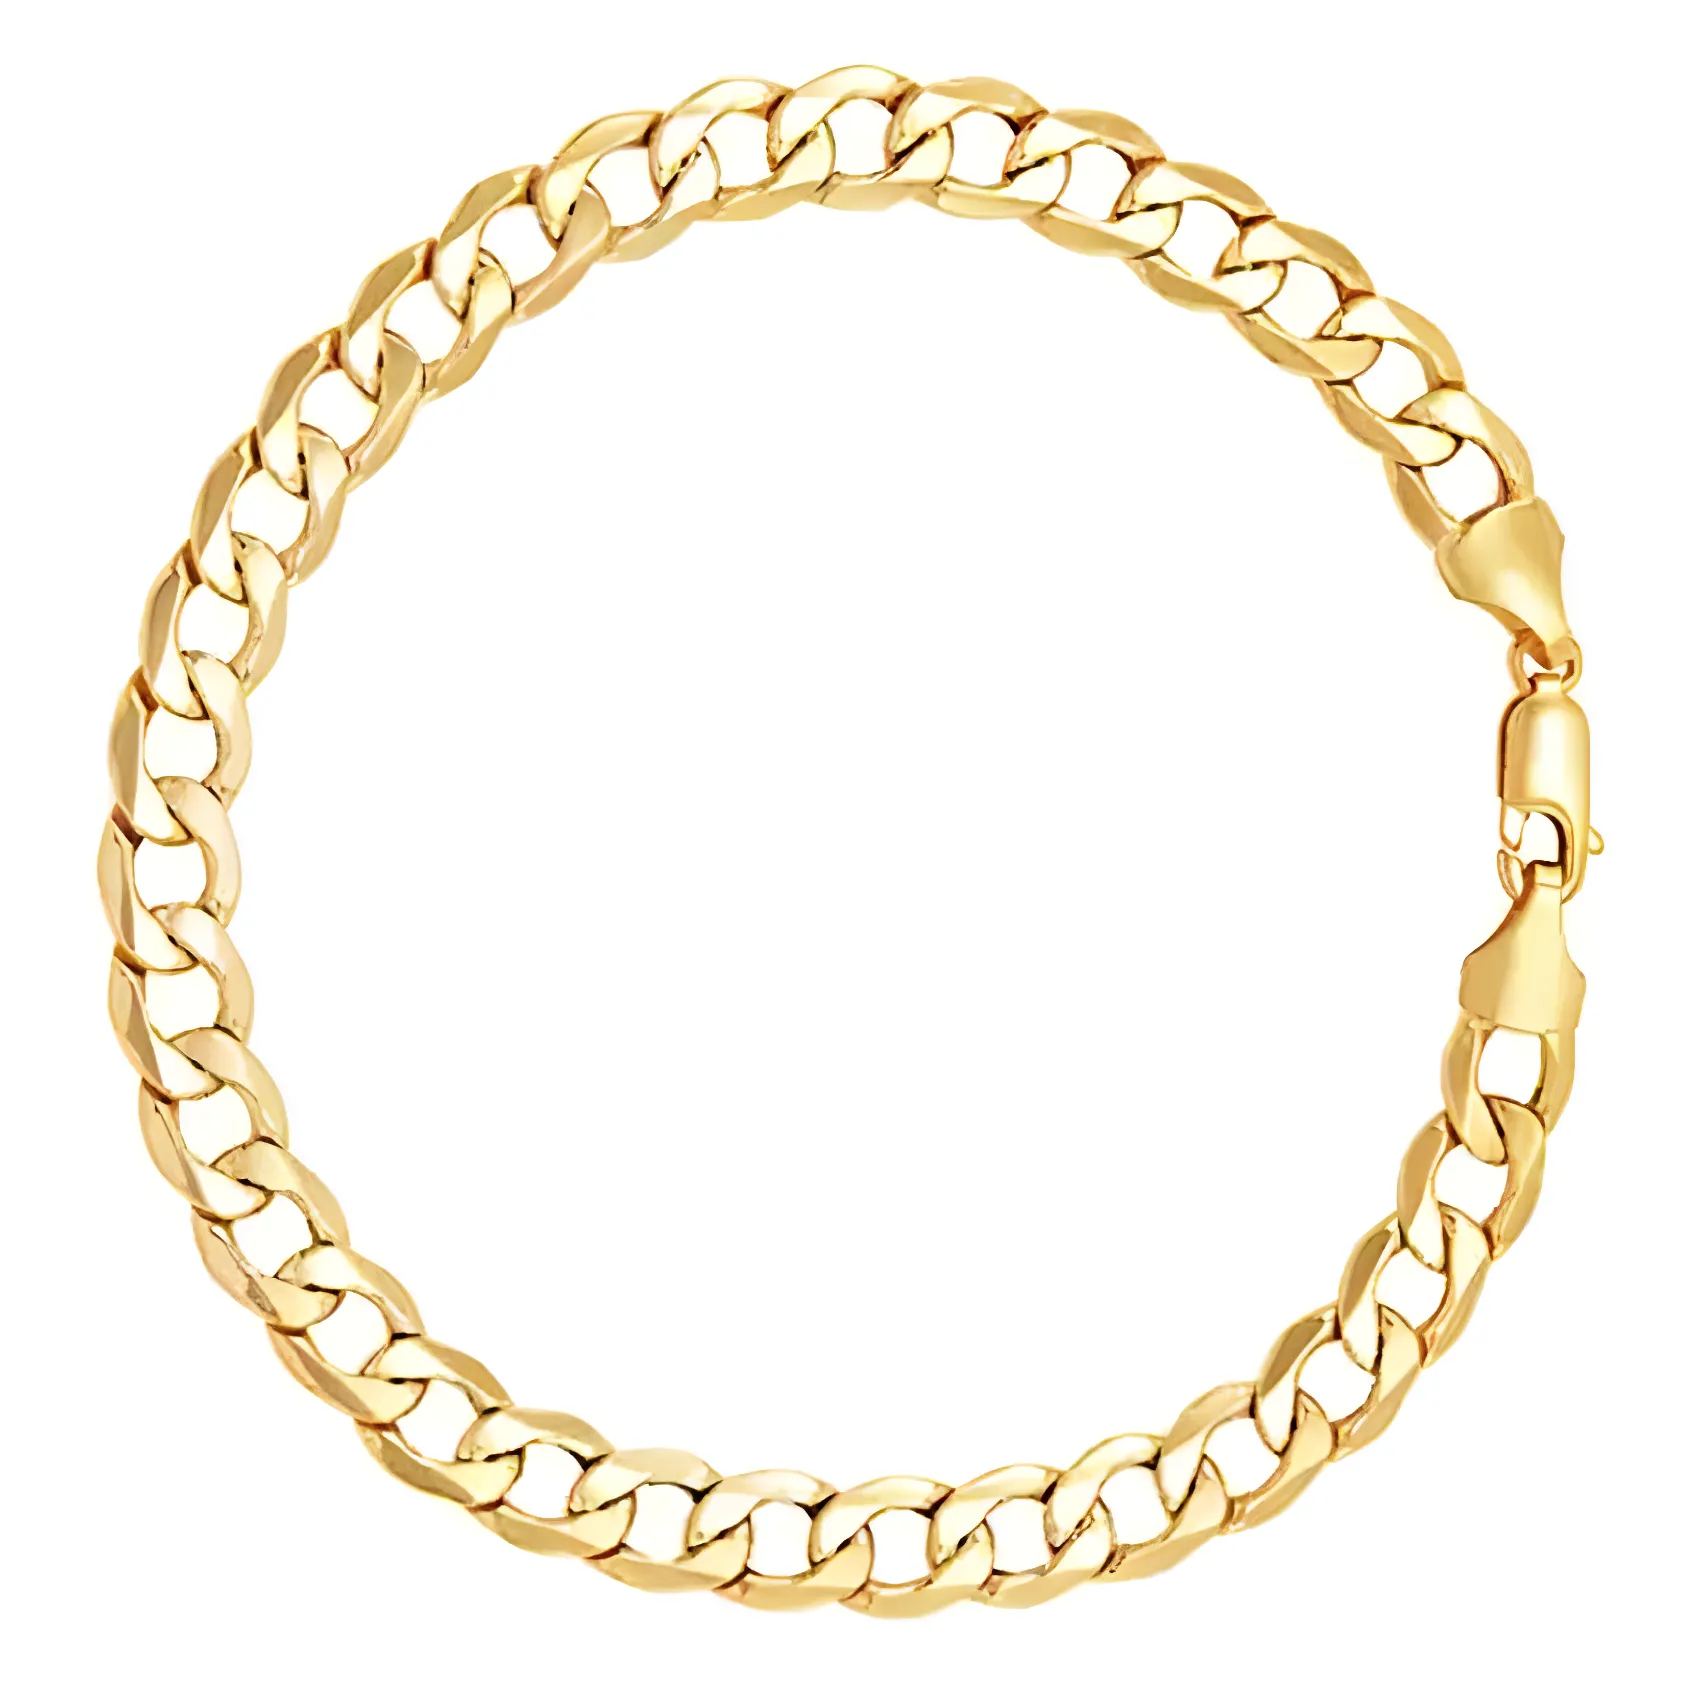 Free Golden Curb Bracelet